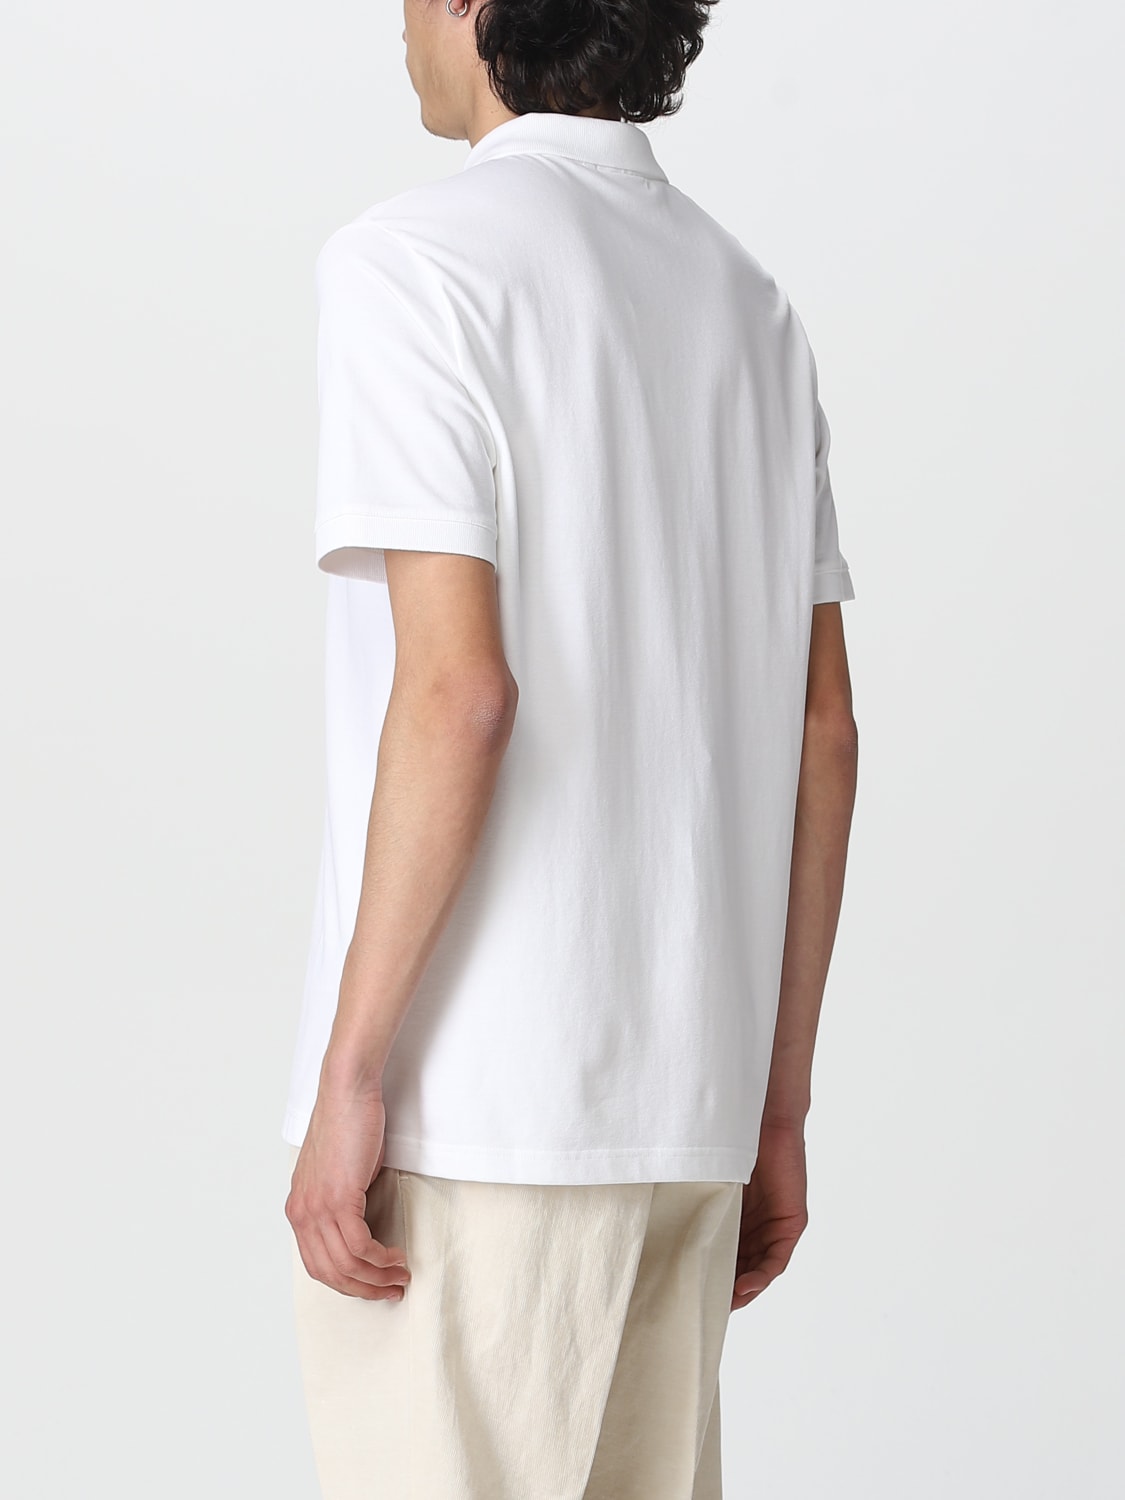 CALVIN KLEIN: polo shirt for man - White | Calvin Klein polo shirt ...